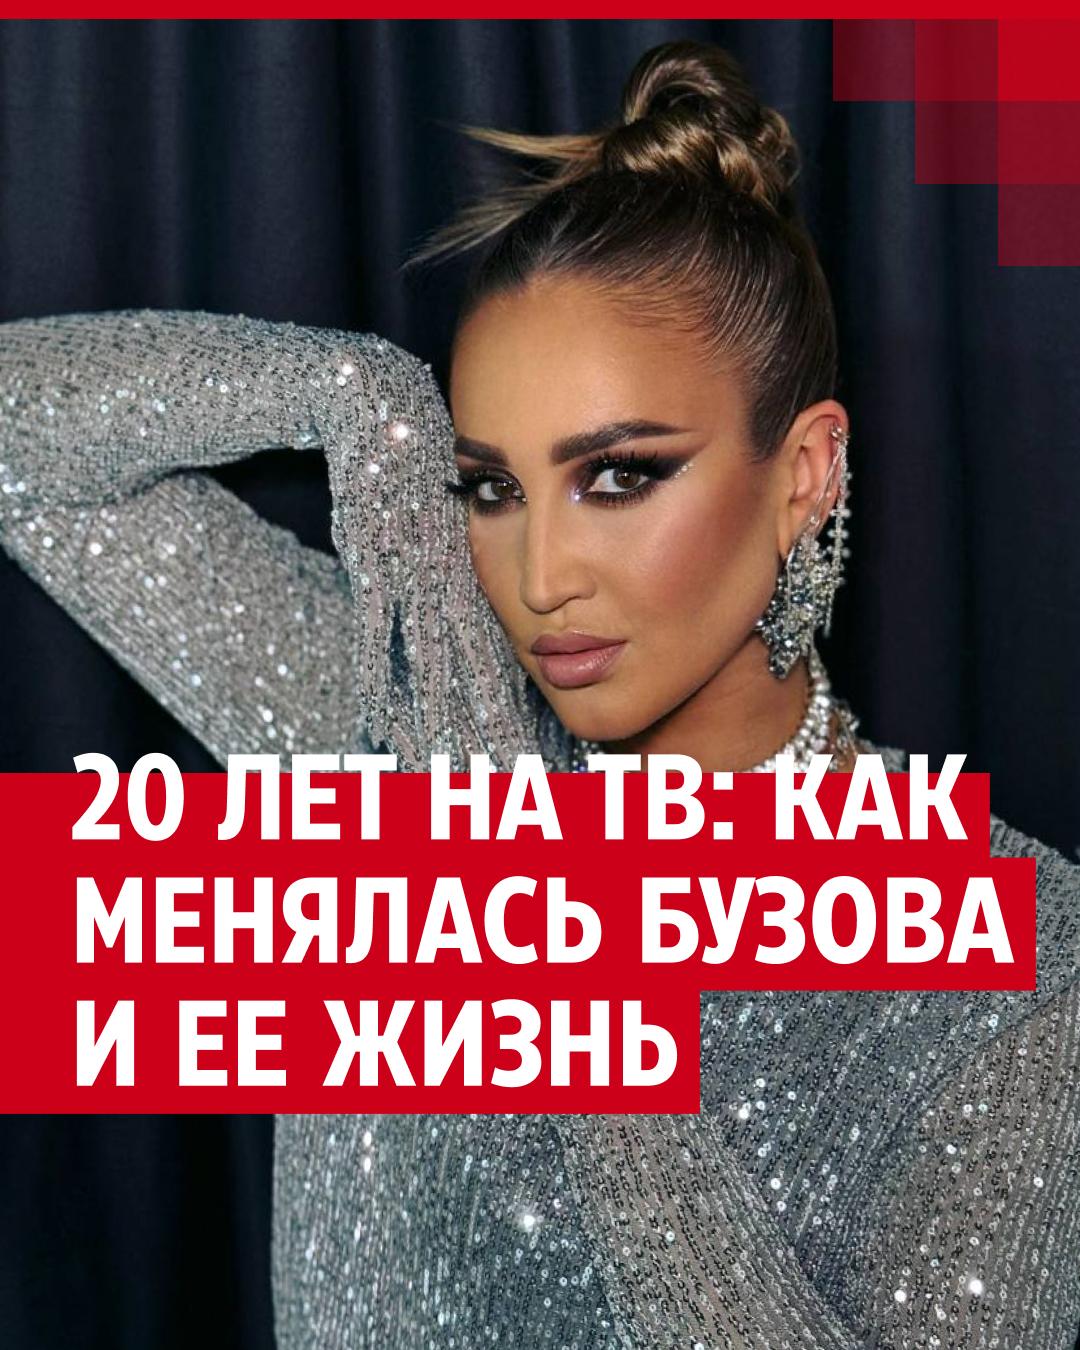 Без макияжа Вера Брежнева смотрится ровесницей 16-летней дочери